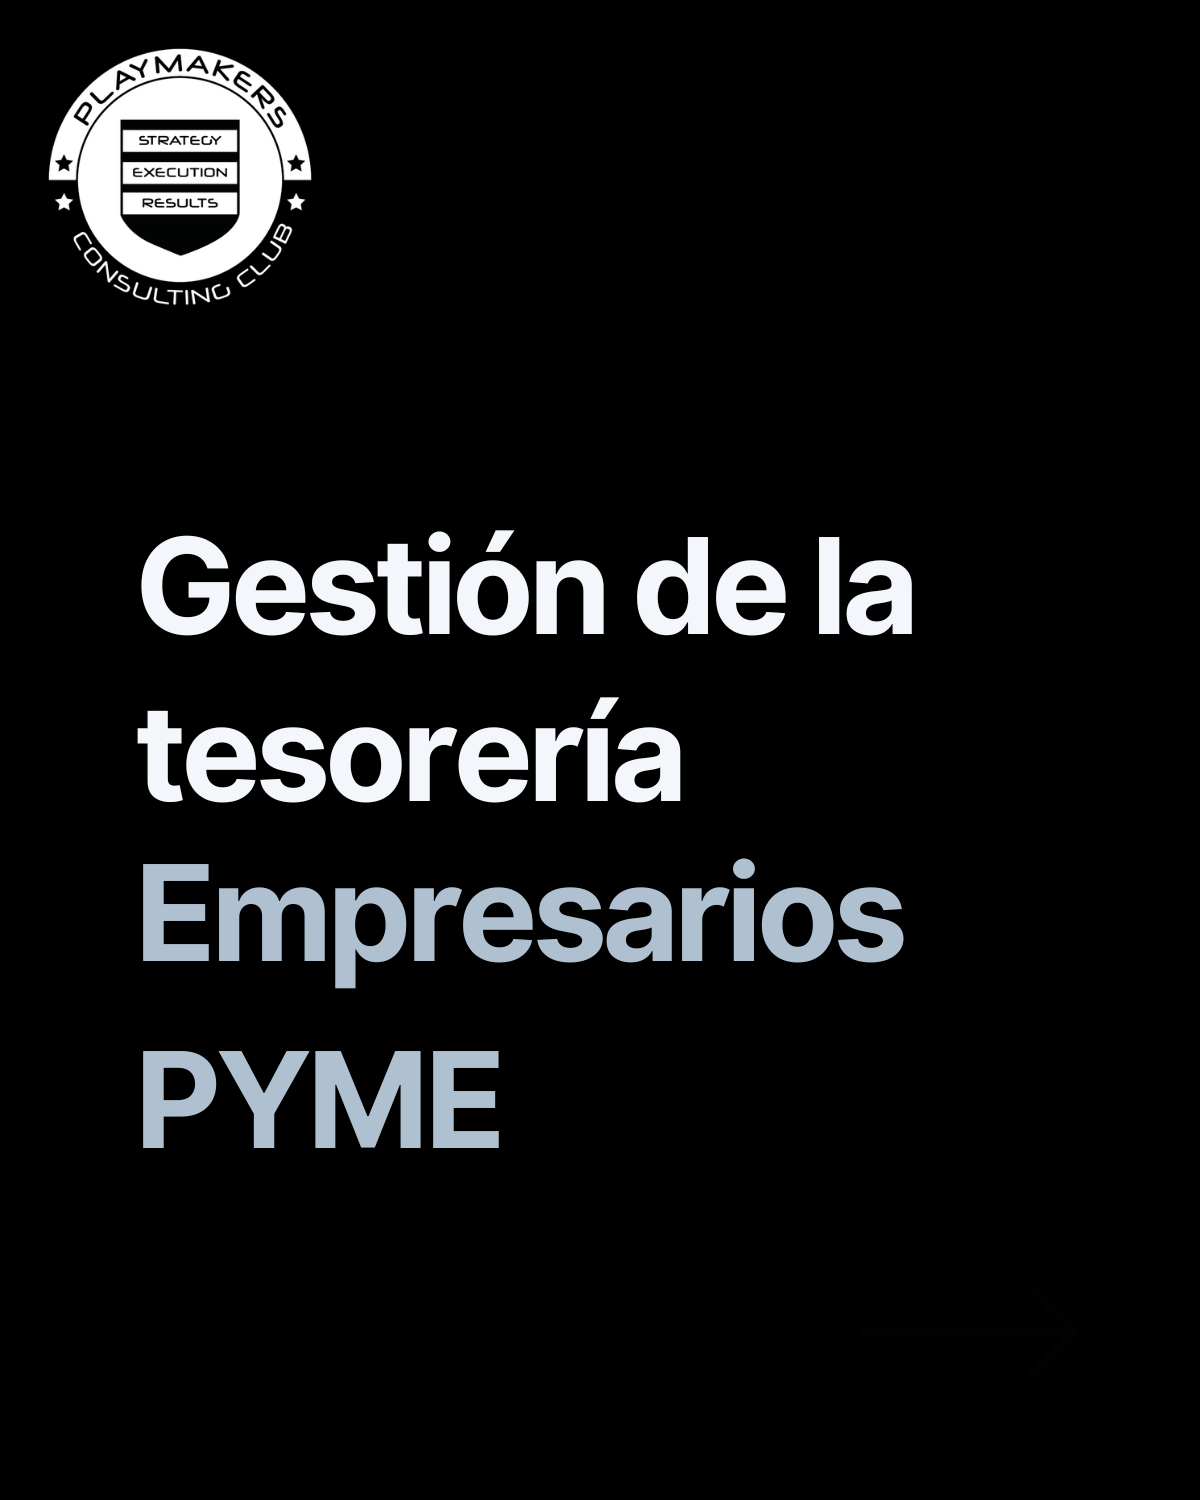 Gestión de la tesorería para empresarios pyme en España